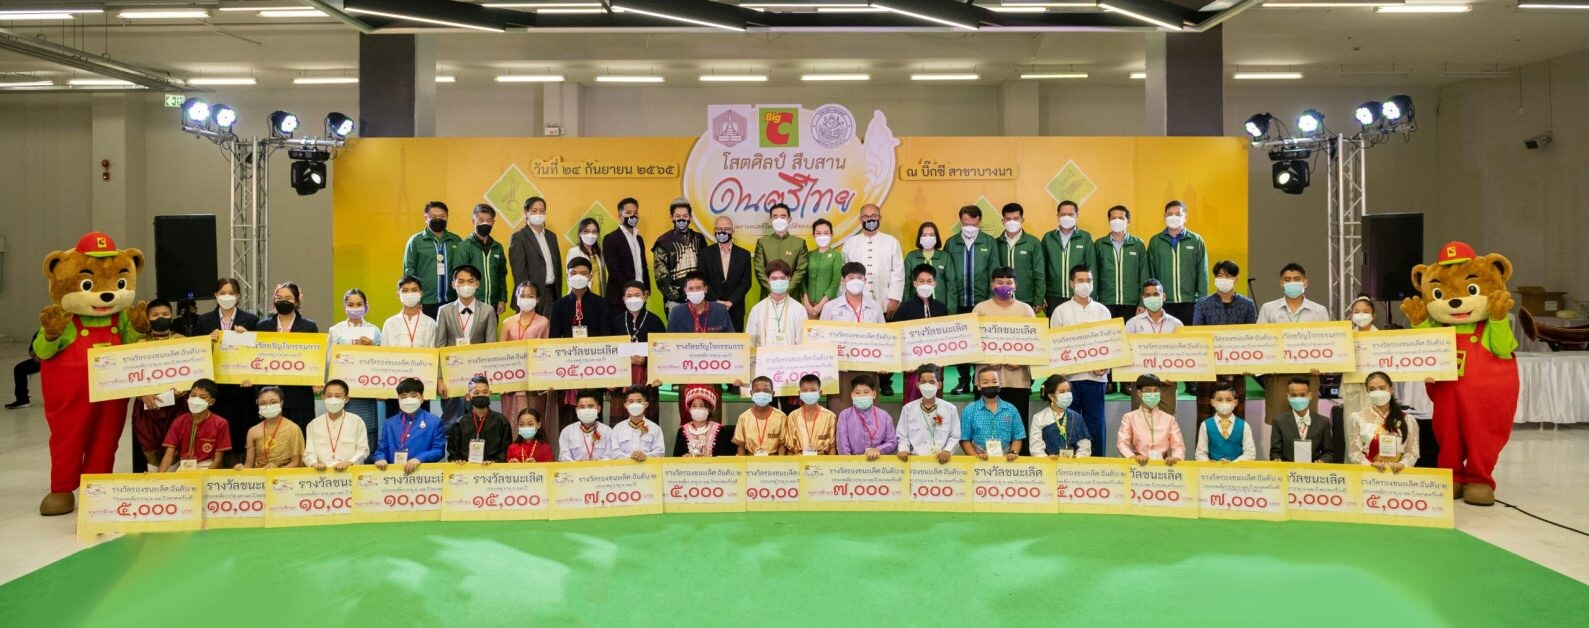 บิ๊กซี จัดโครงการแข่งขัน "บิ๊กซี โสตศิลป์ สืบสาน ดนตรีไทย" รอบชิงชนะเลิศ ชิงทุนการศึกษารวม 400,000 บาท